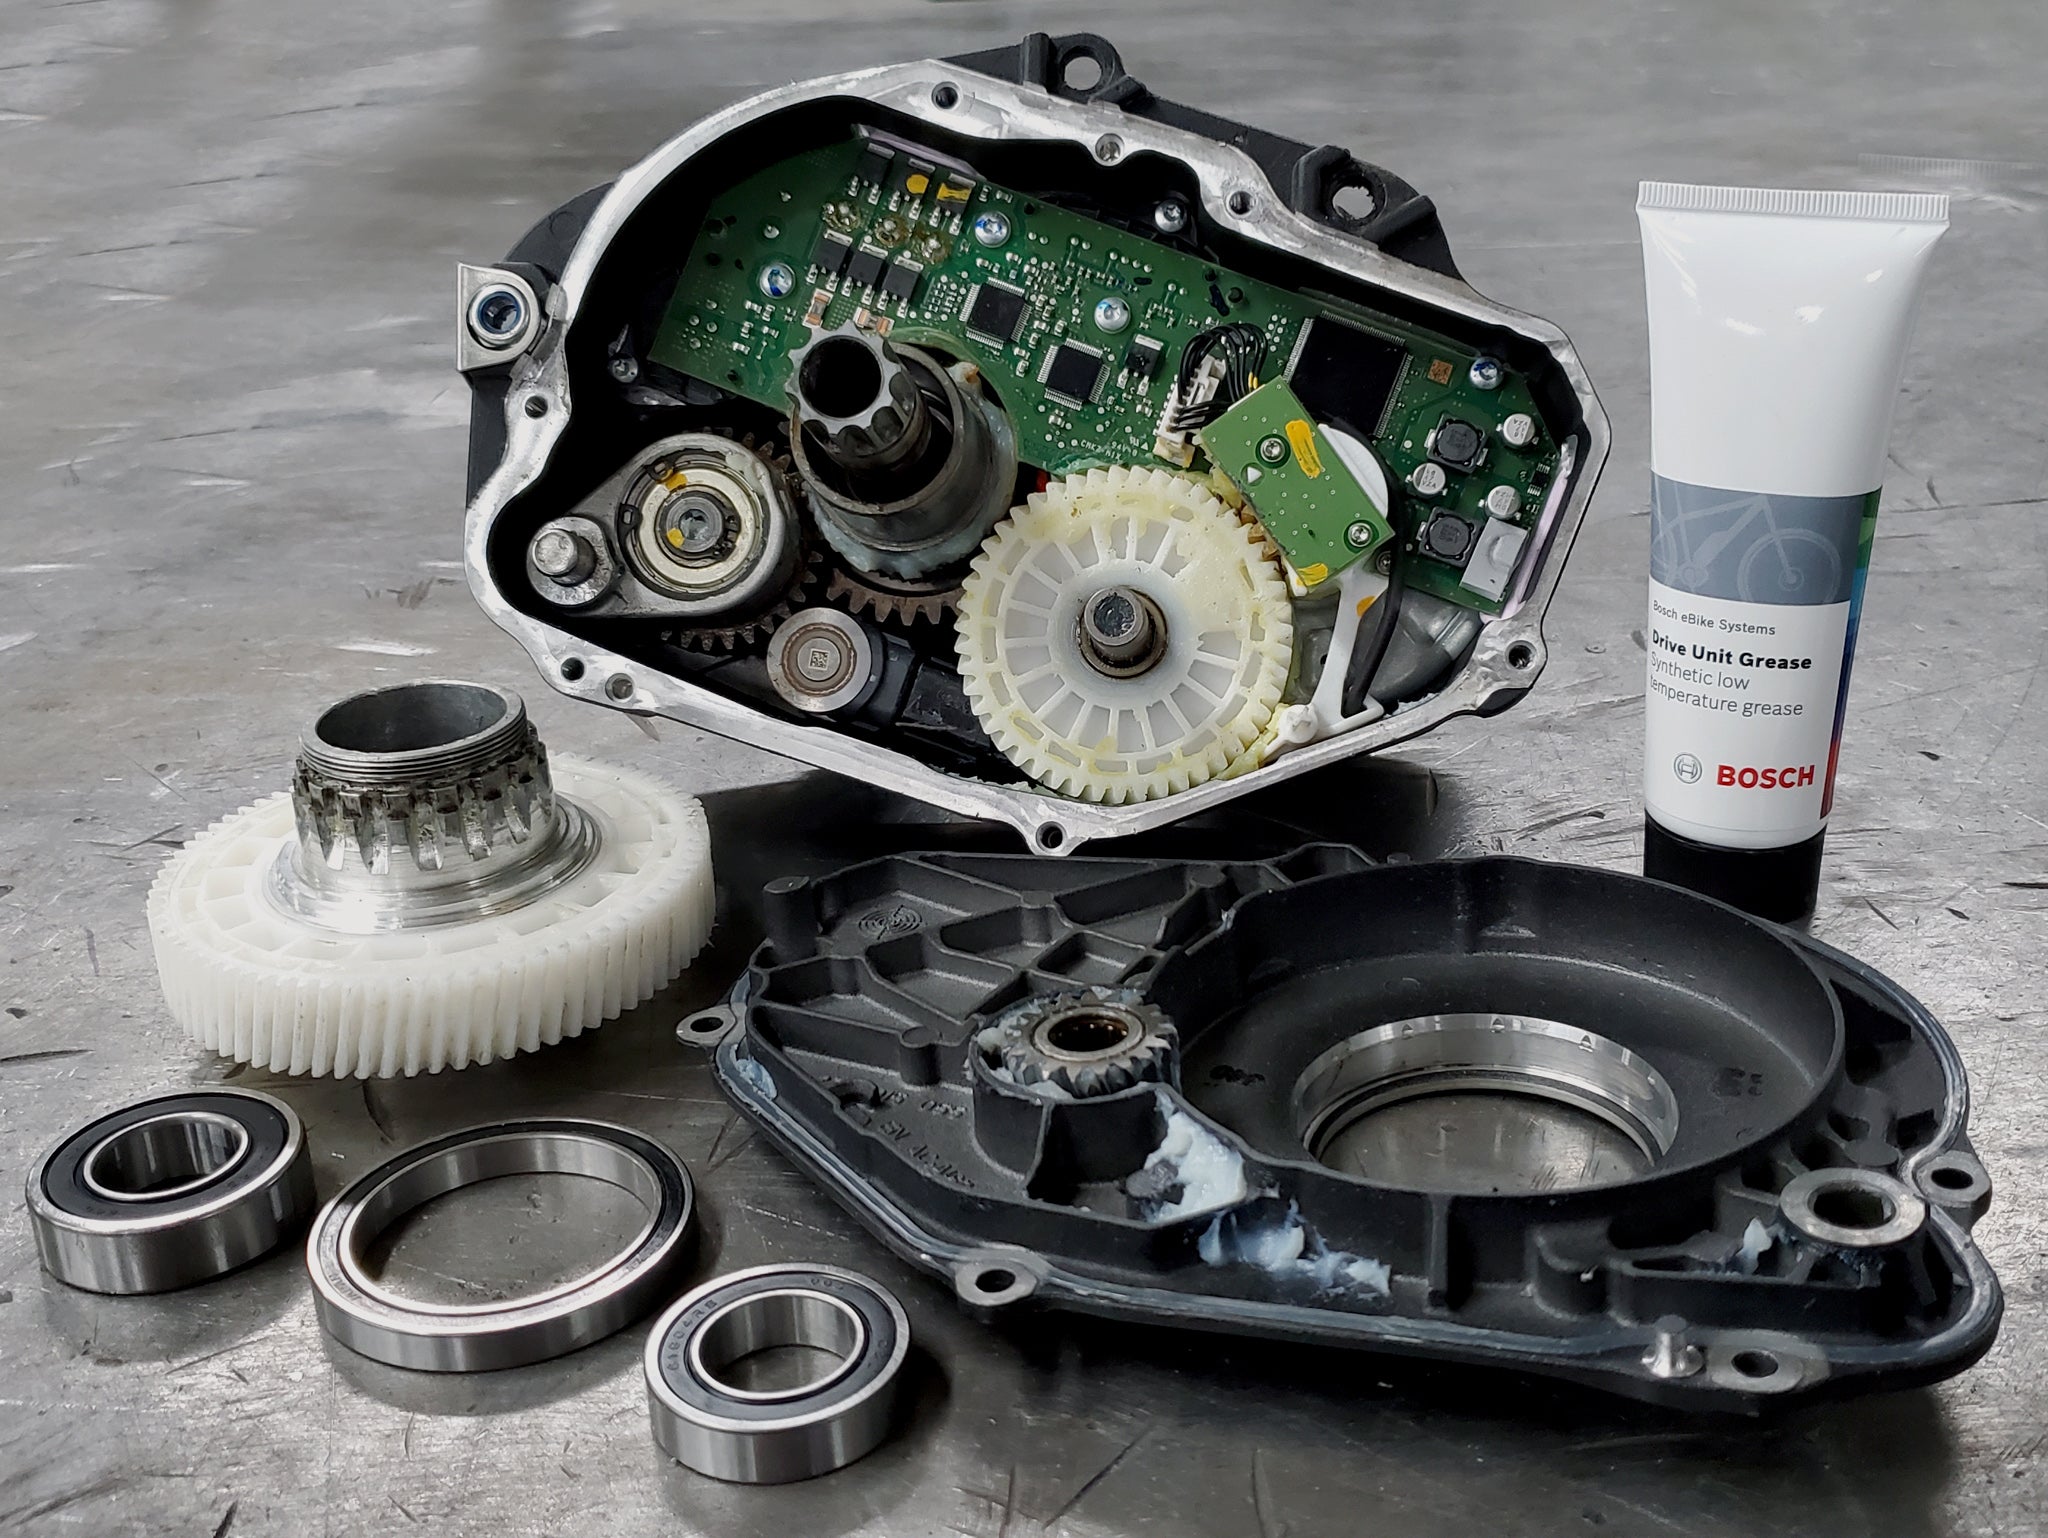 Réparation et entretien des moteurs Bosch, Shimano, Yamaha et Brose eBike